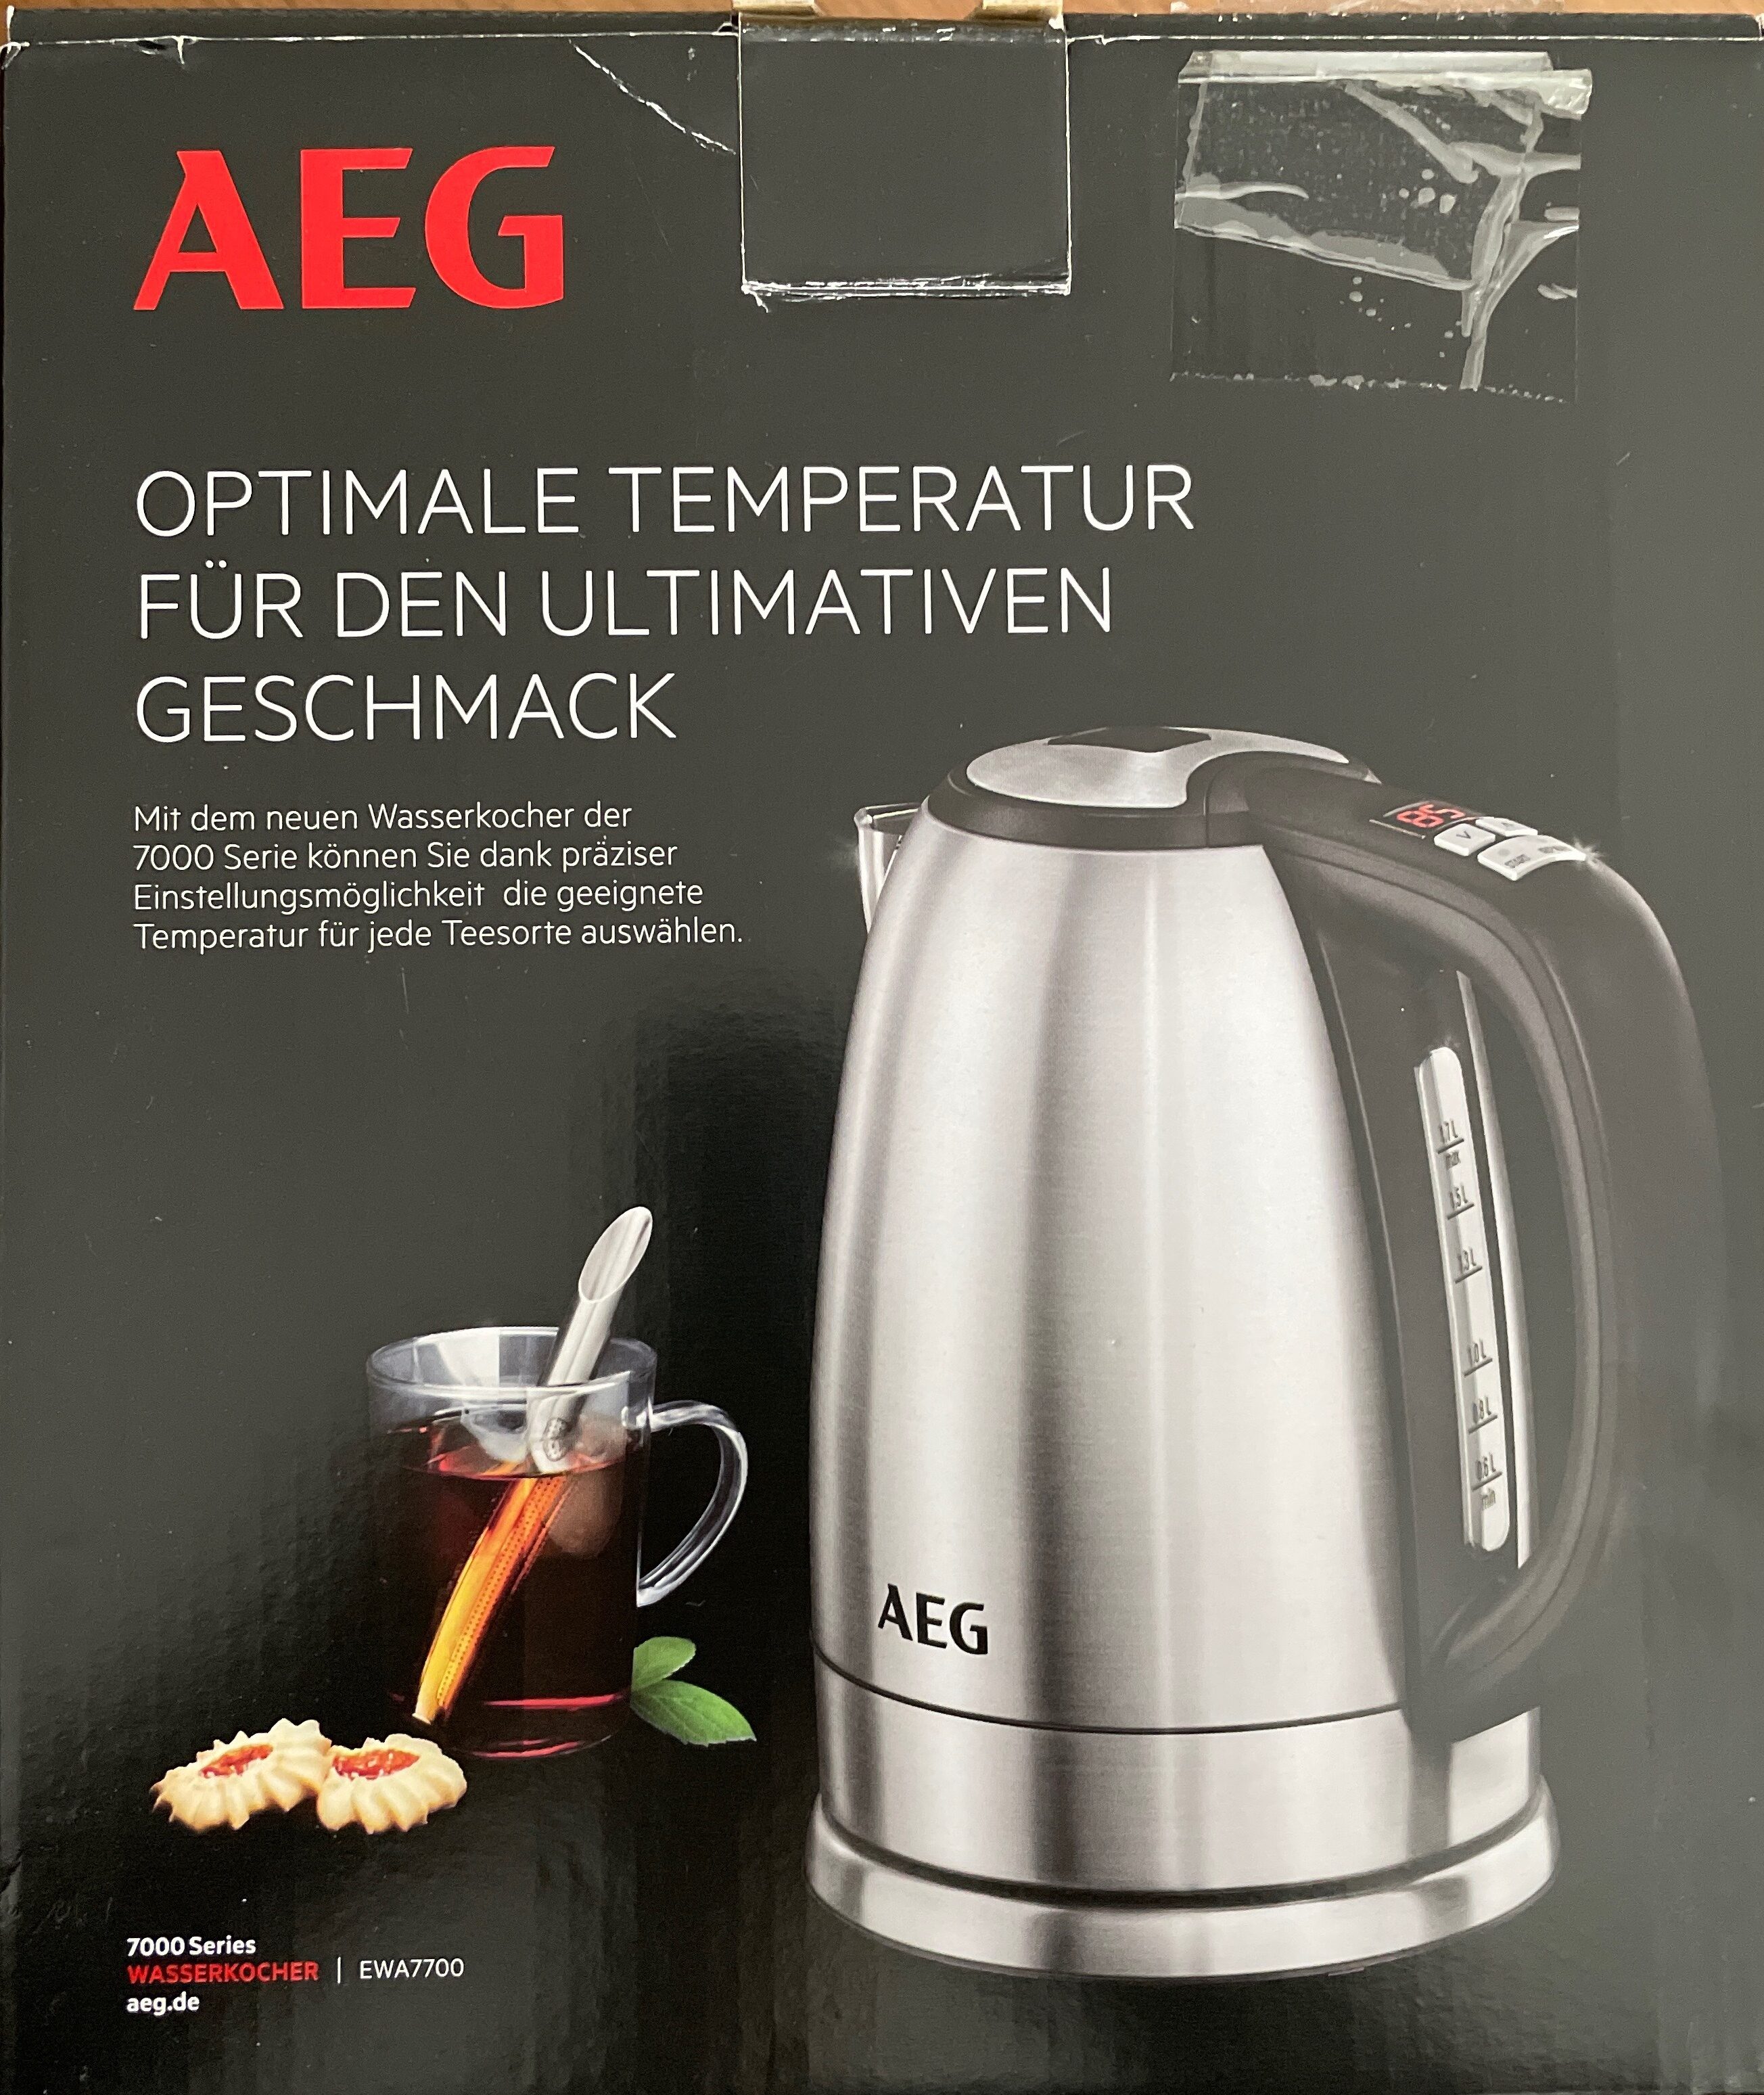 AEG Wasserkocher - Product - de